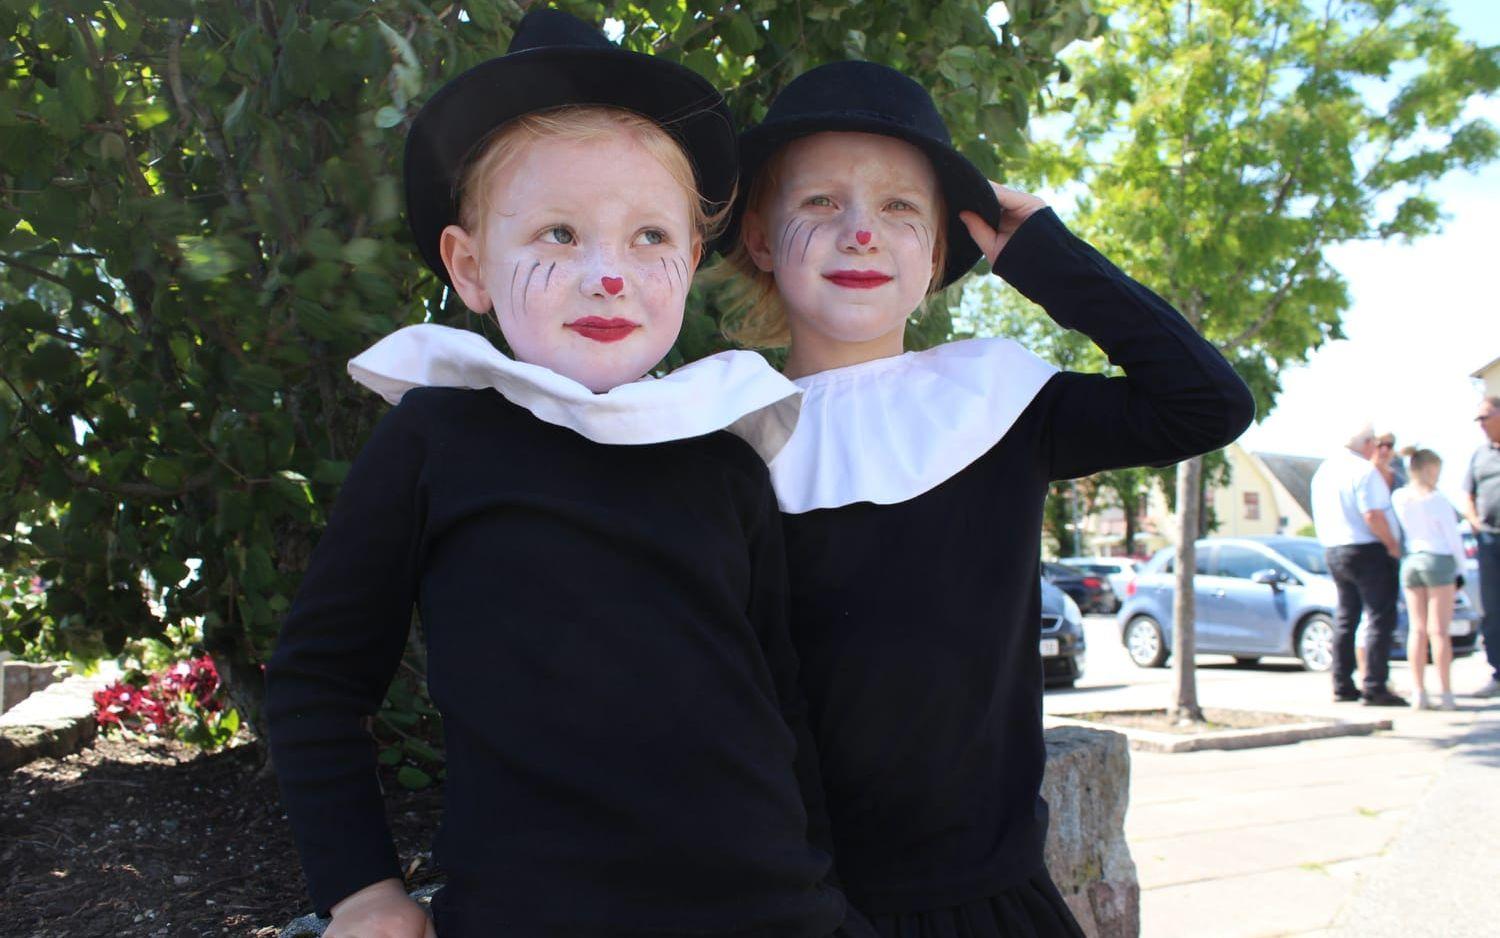 De två vännerna Elsa Clarholm Eriksson och Leia Eden deltog i kortegen i år igen. Detta år utklädda till en form av clown. Bilder: Nanna Nilsson